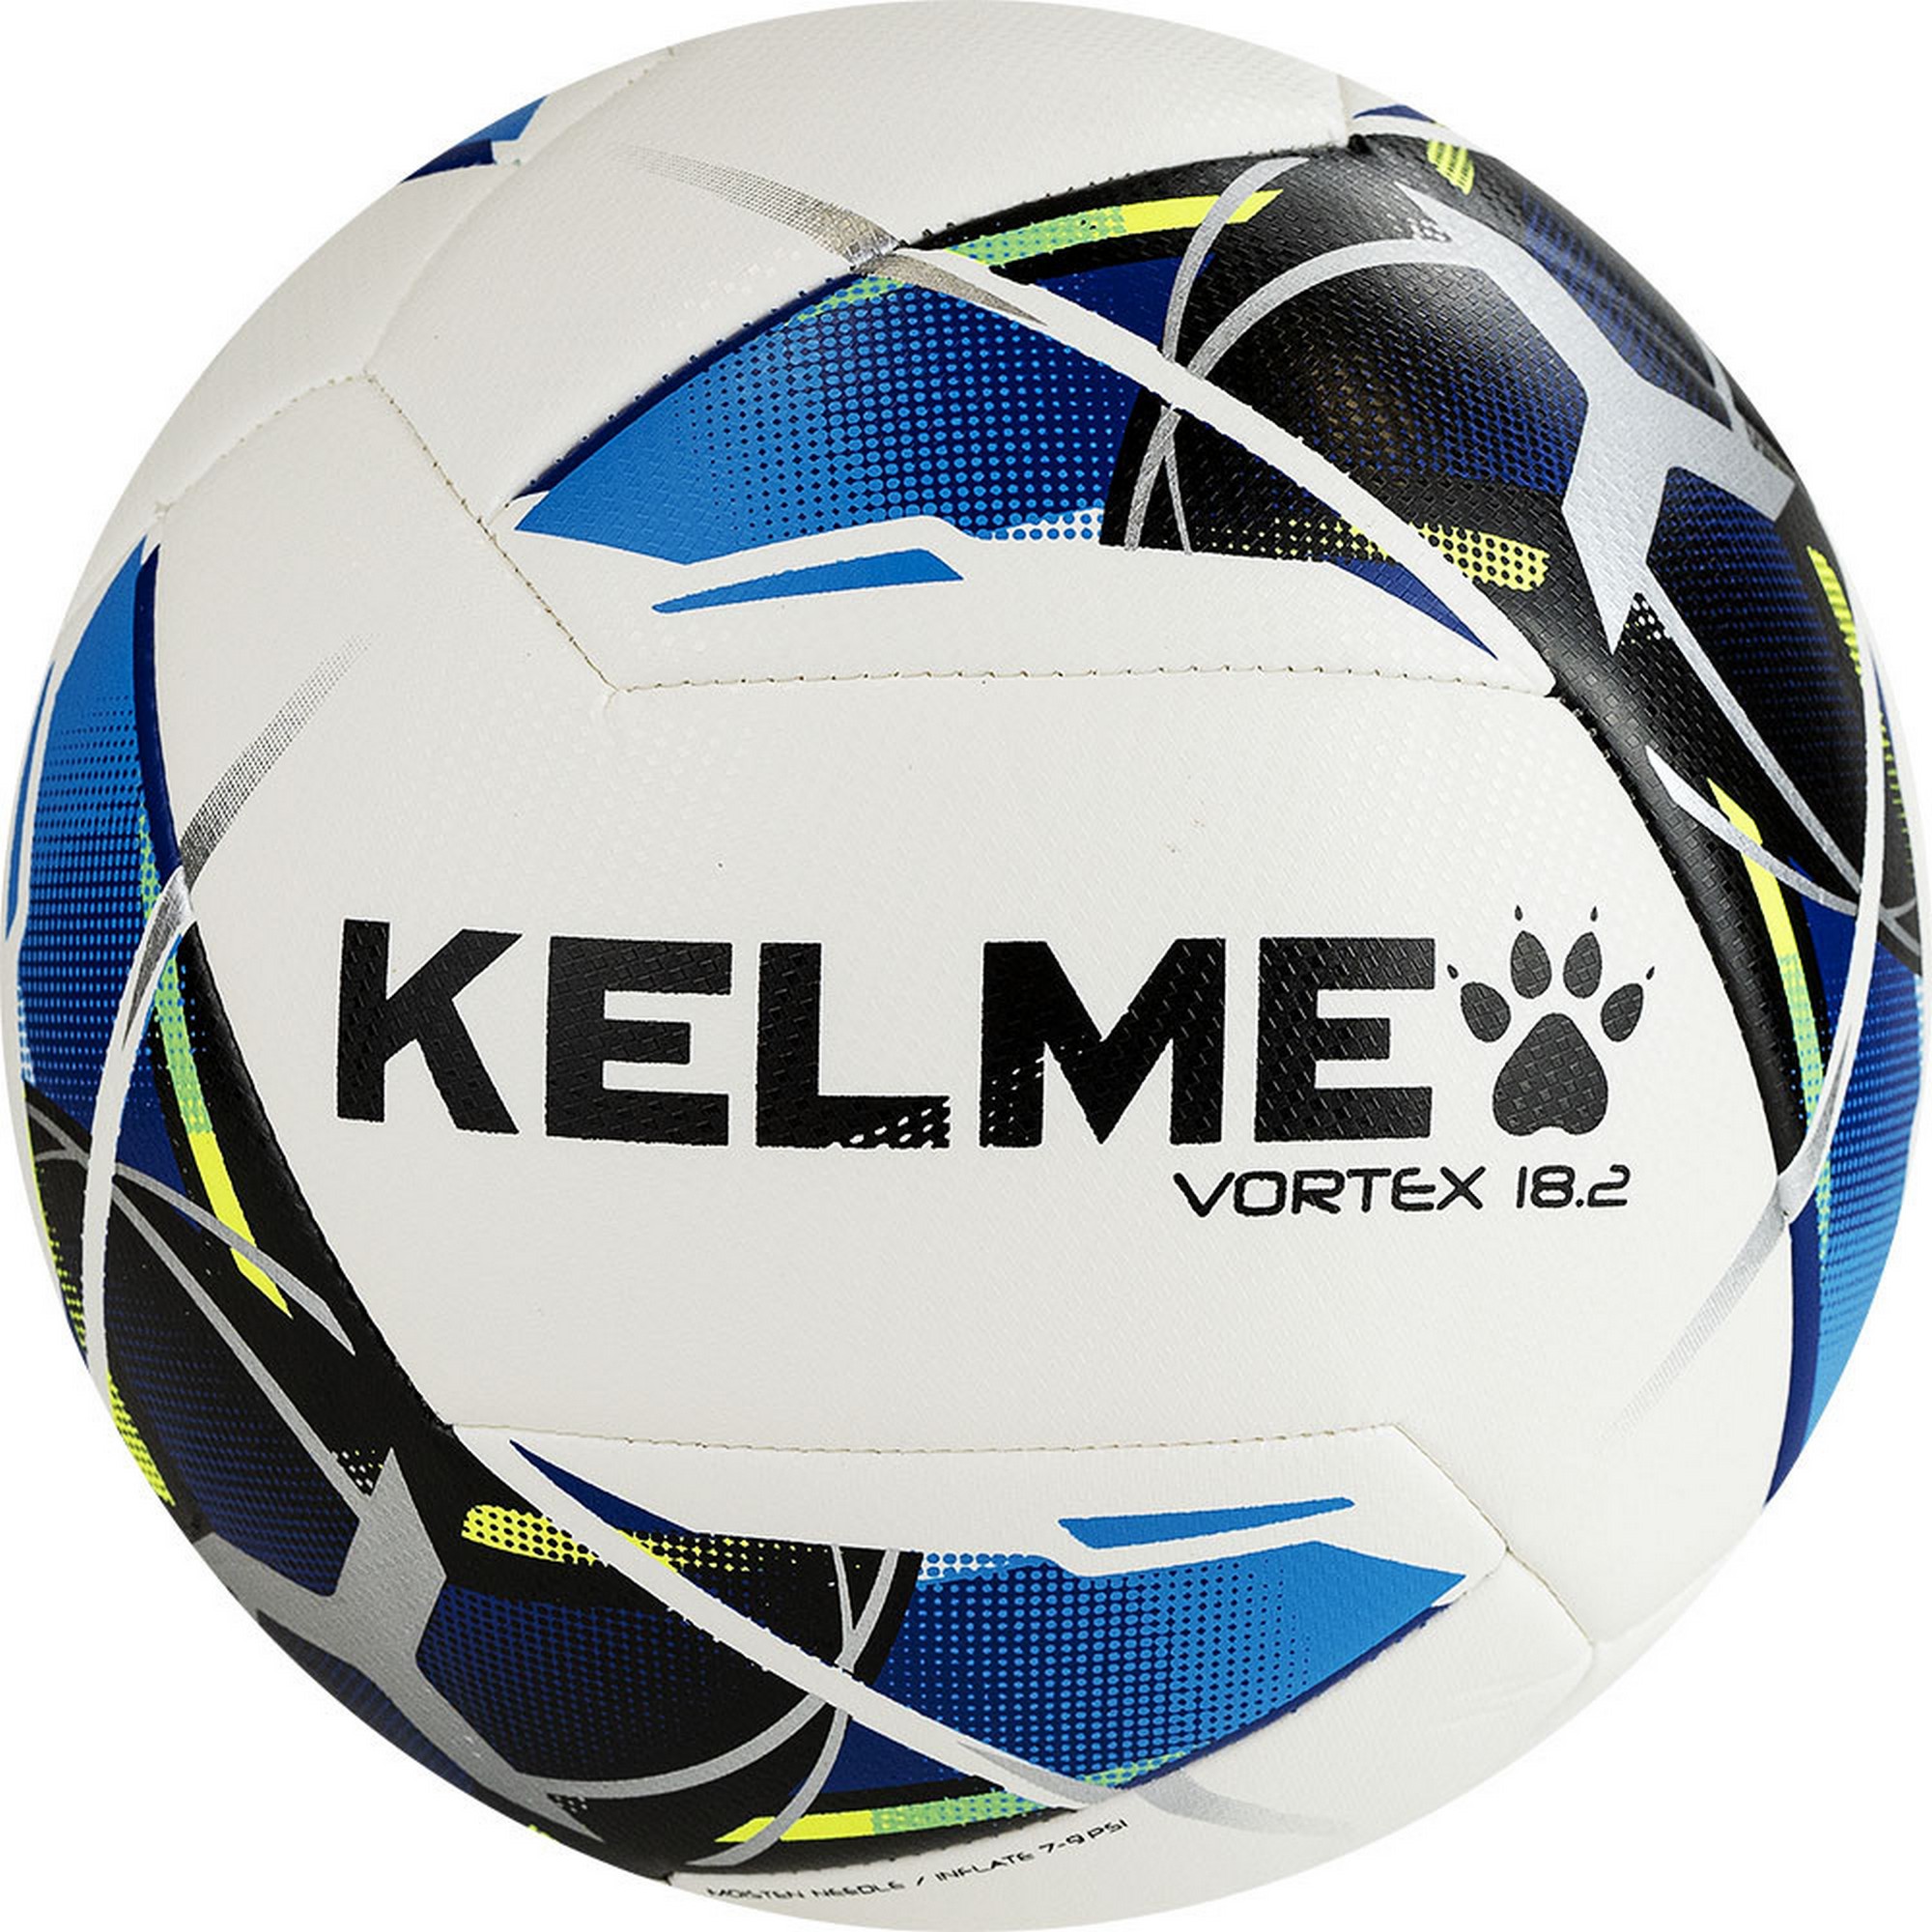 Купить Мяч футбольный Kelme Vortex 18.2 9886120-113 р.5,